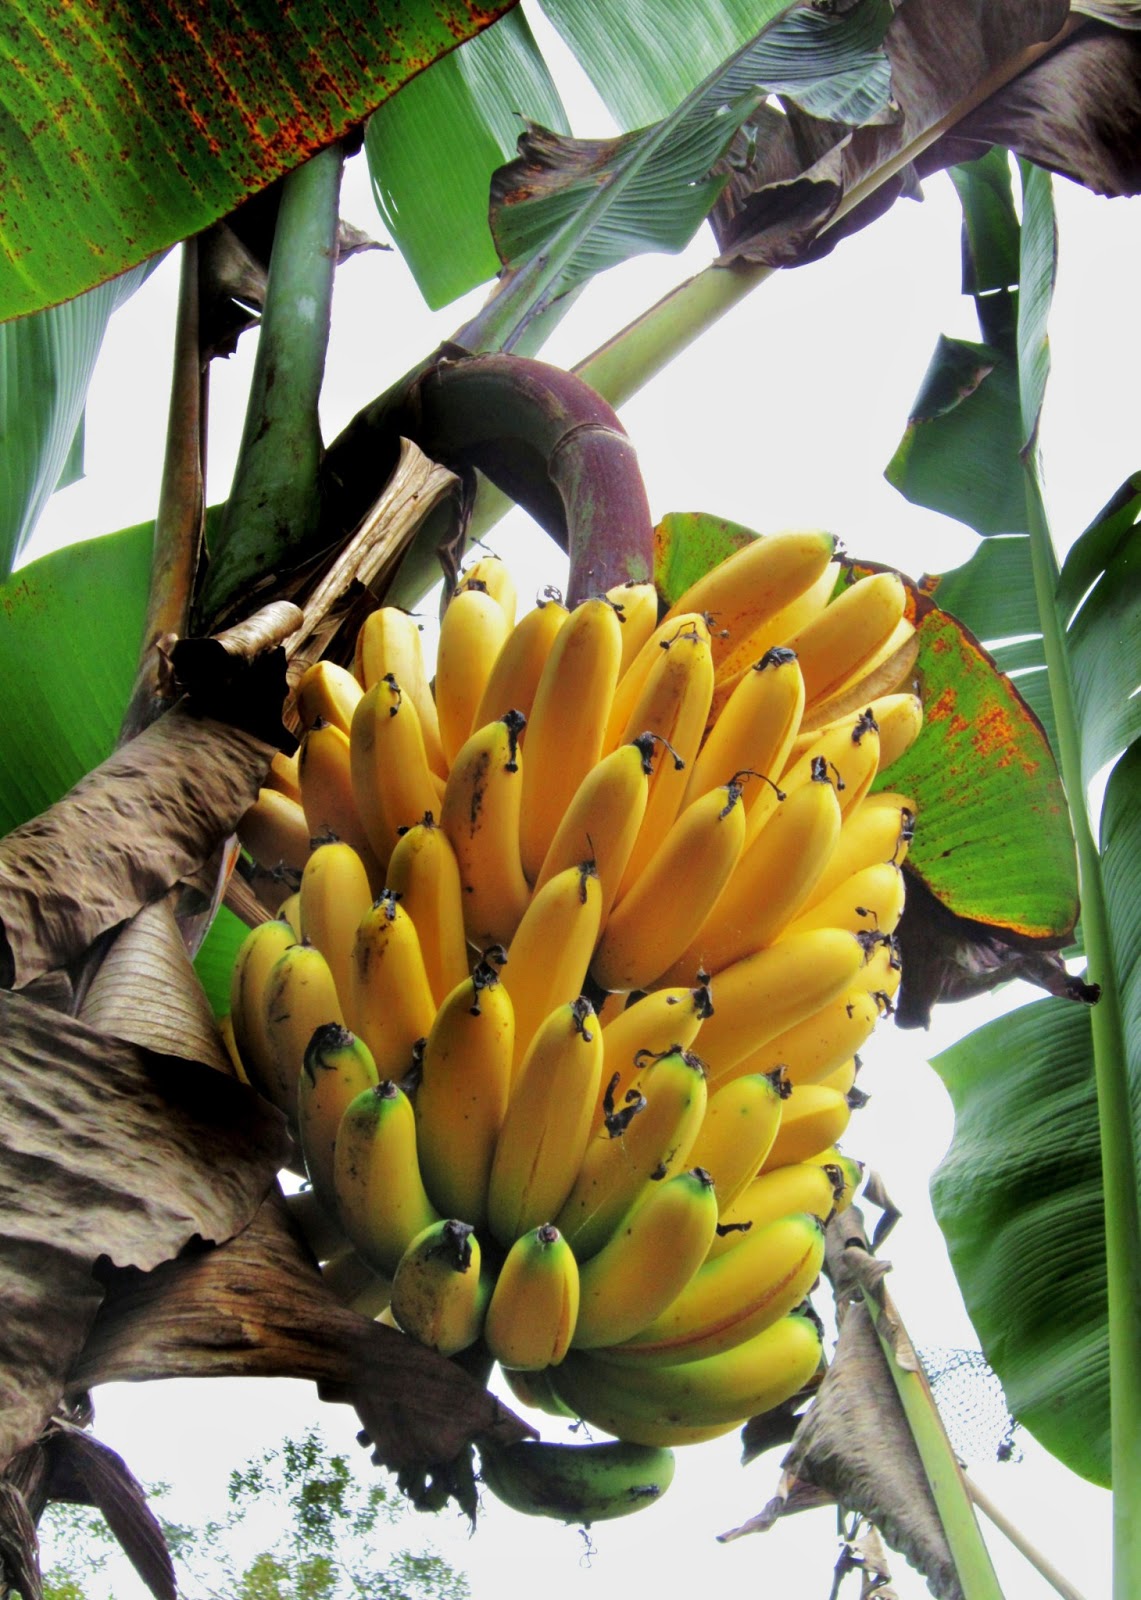 黃橙橙的香蕉還在樹上等待摘取就是在欉黃的最佳例子